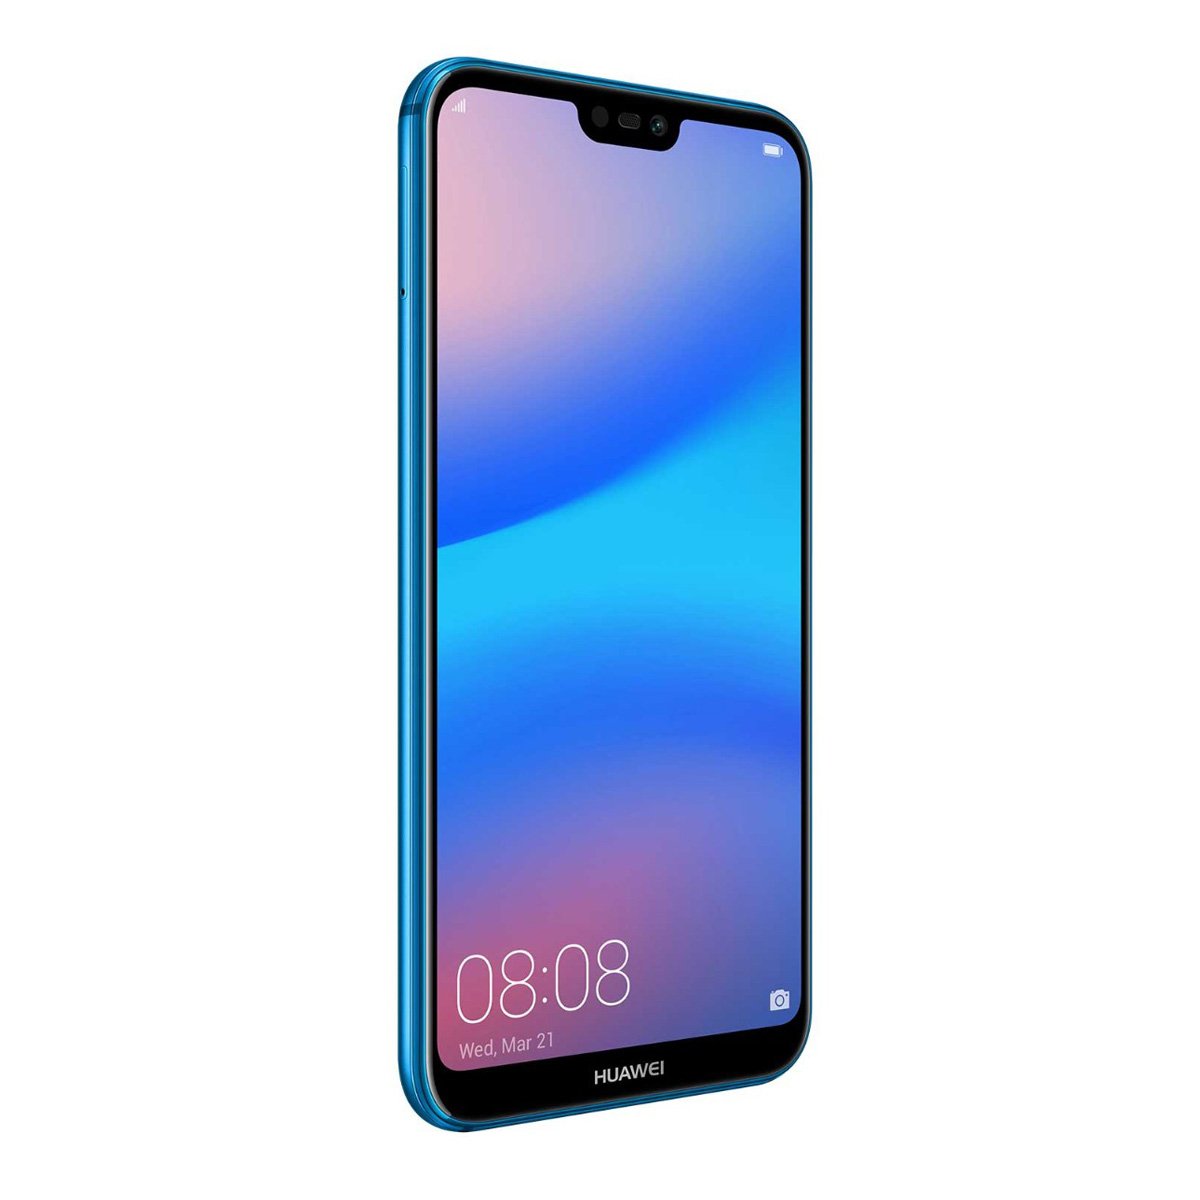 Celular Huawei P20 Lite Ane-Lx3 Color Azul R9 (Telcel)